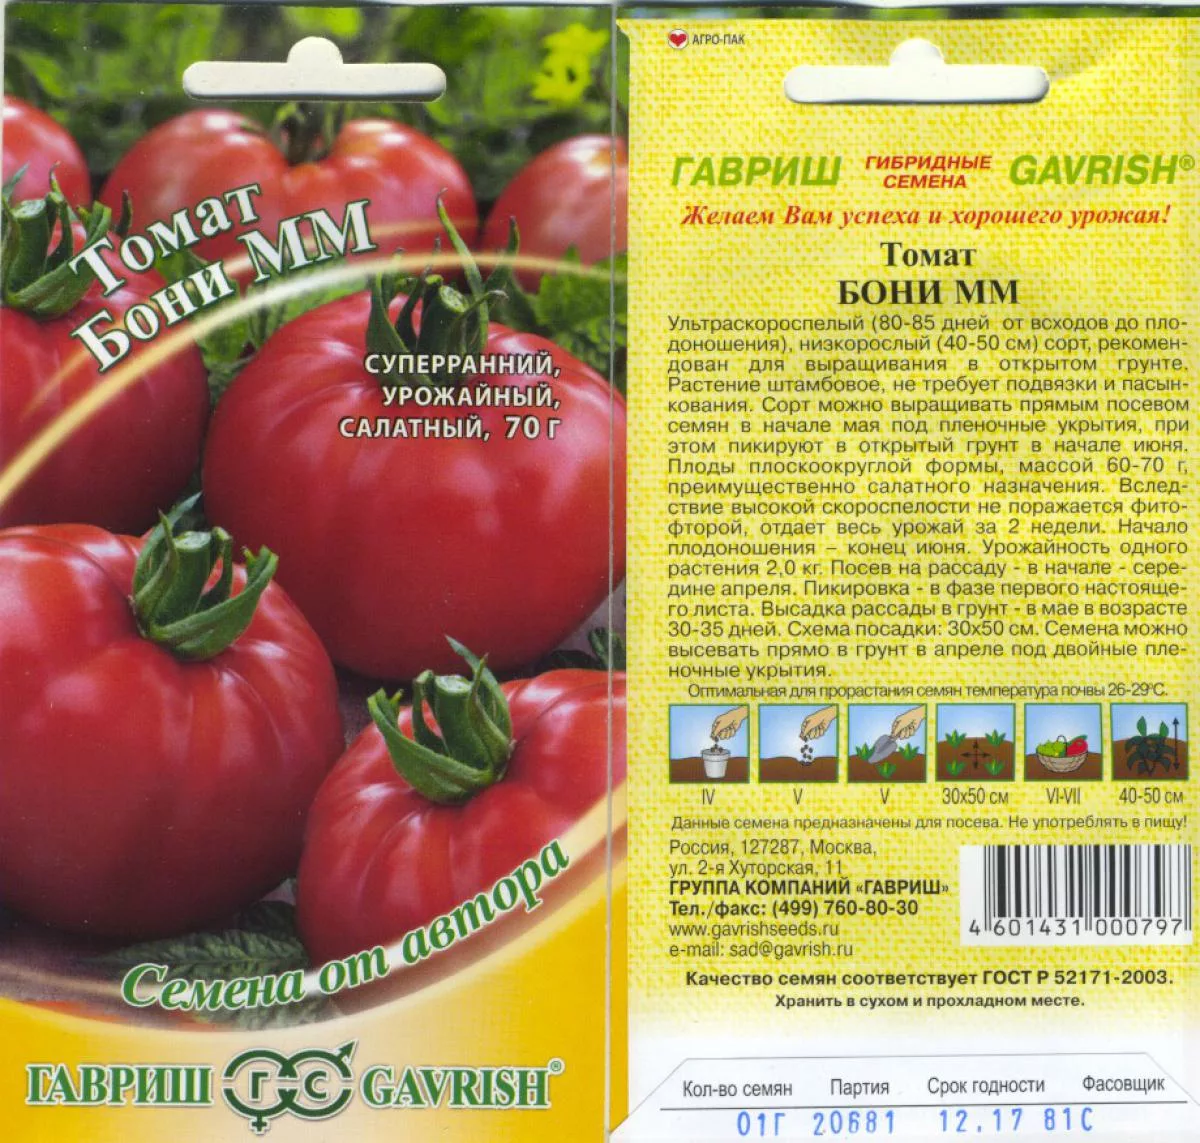 Сорт помидор жигало: характеристика и особенности выращивания